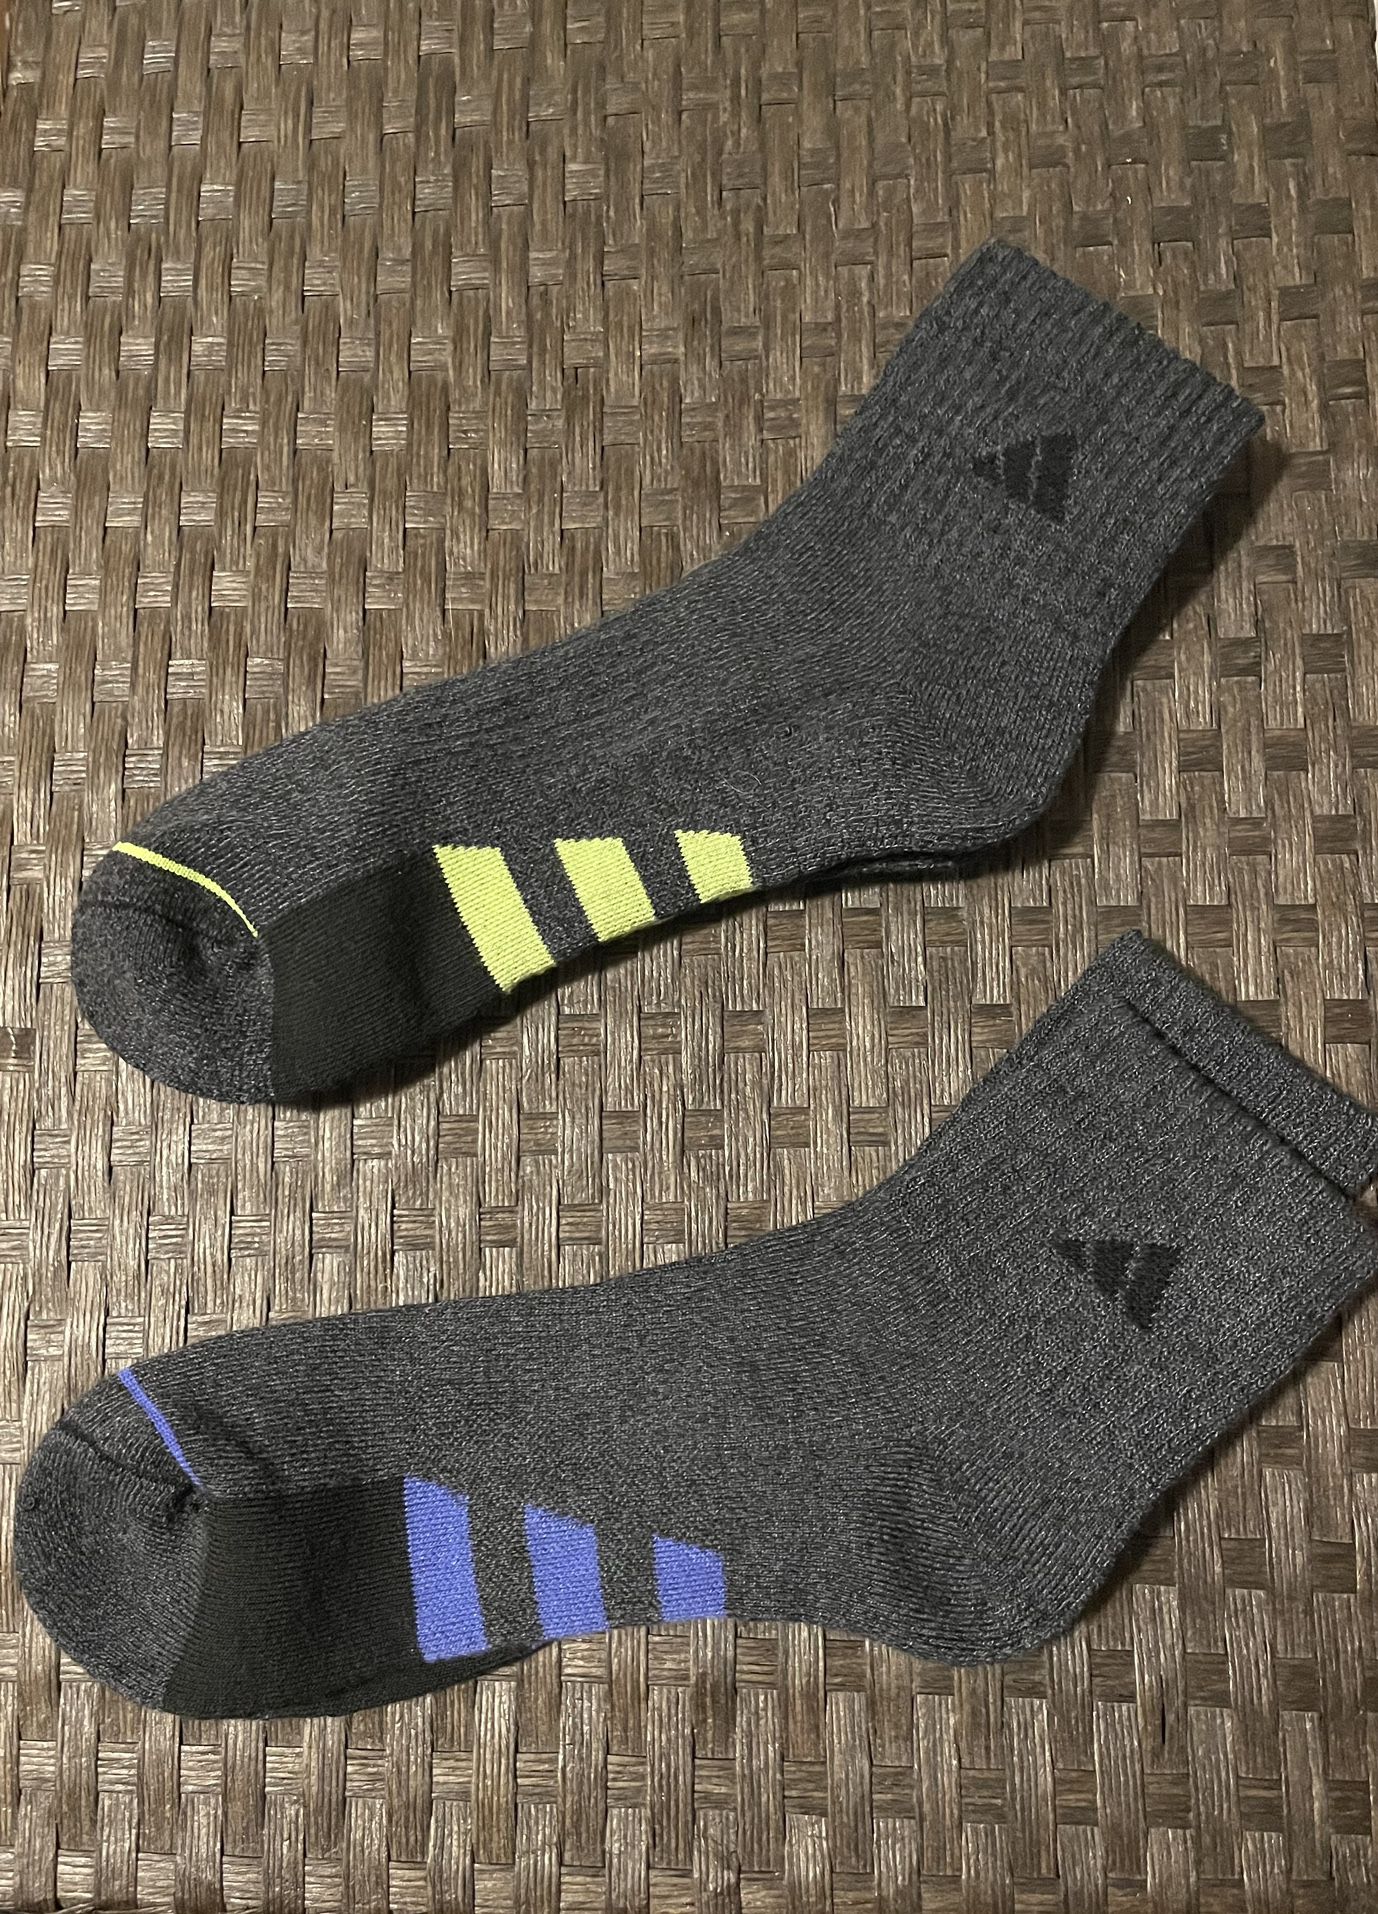 Adidas Kid’s Socks